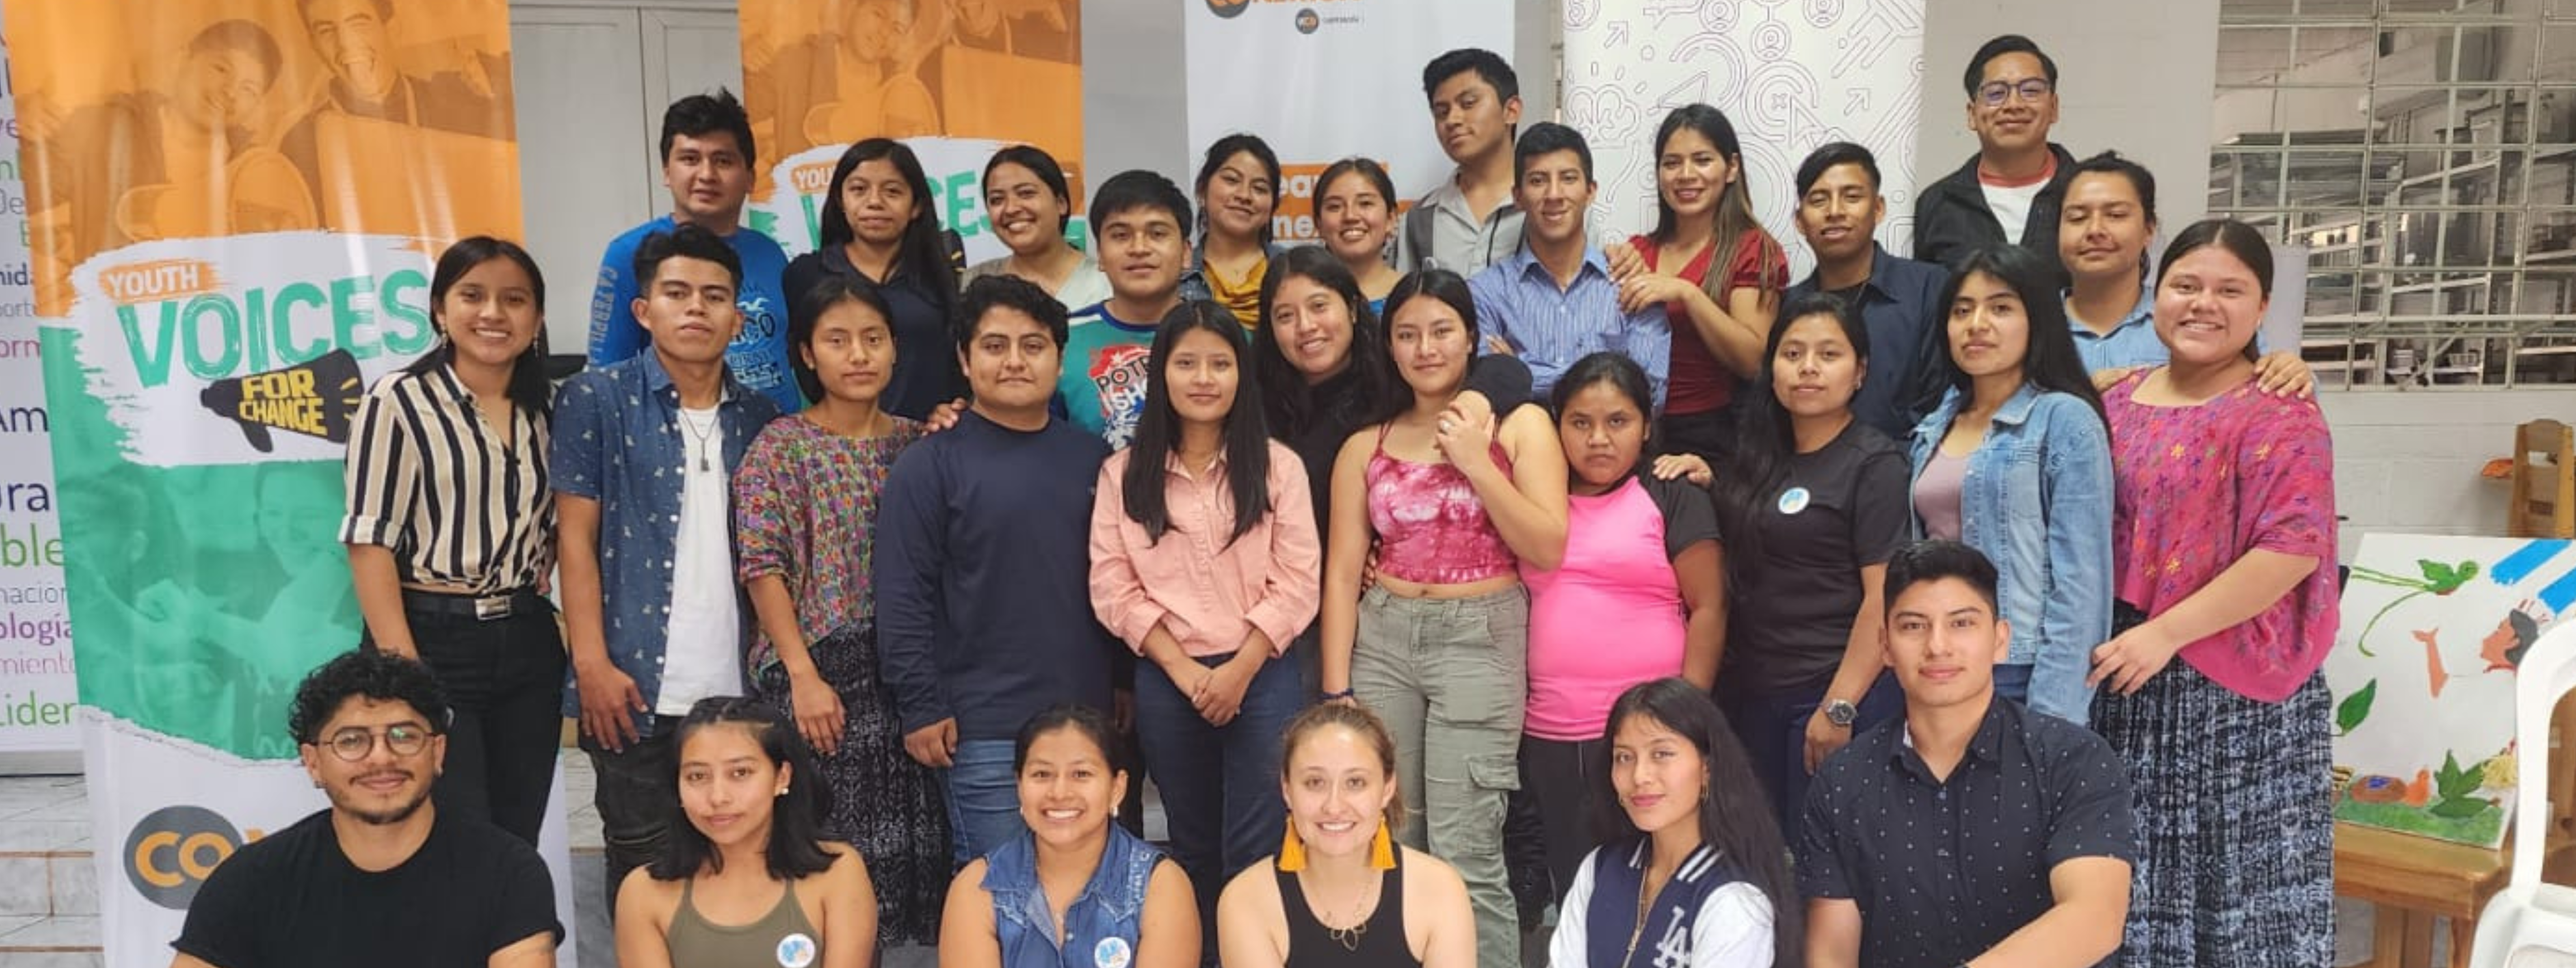 ¡Voces jóvenes guatemaltecas!